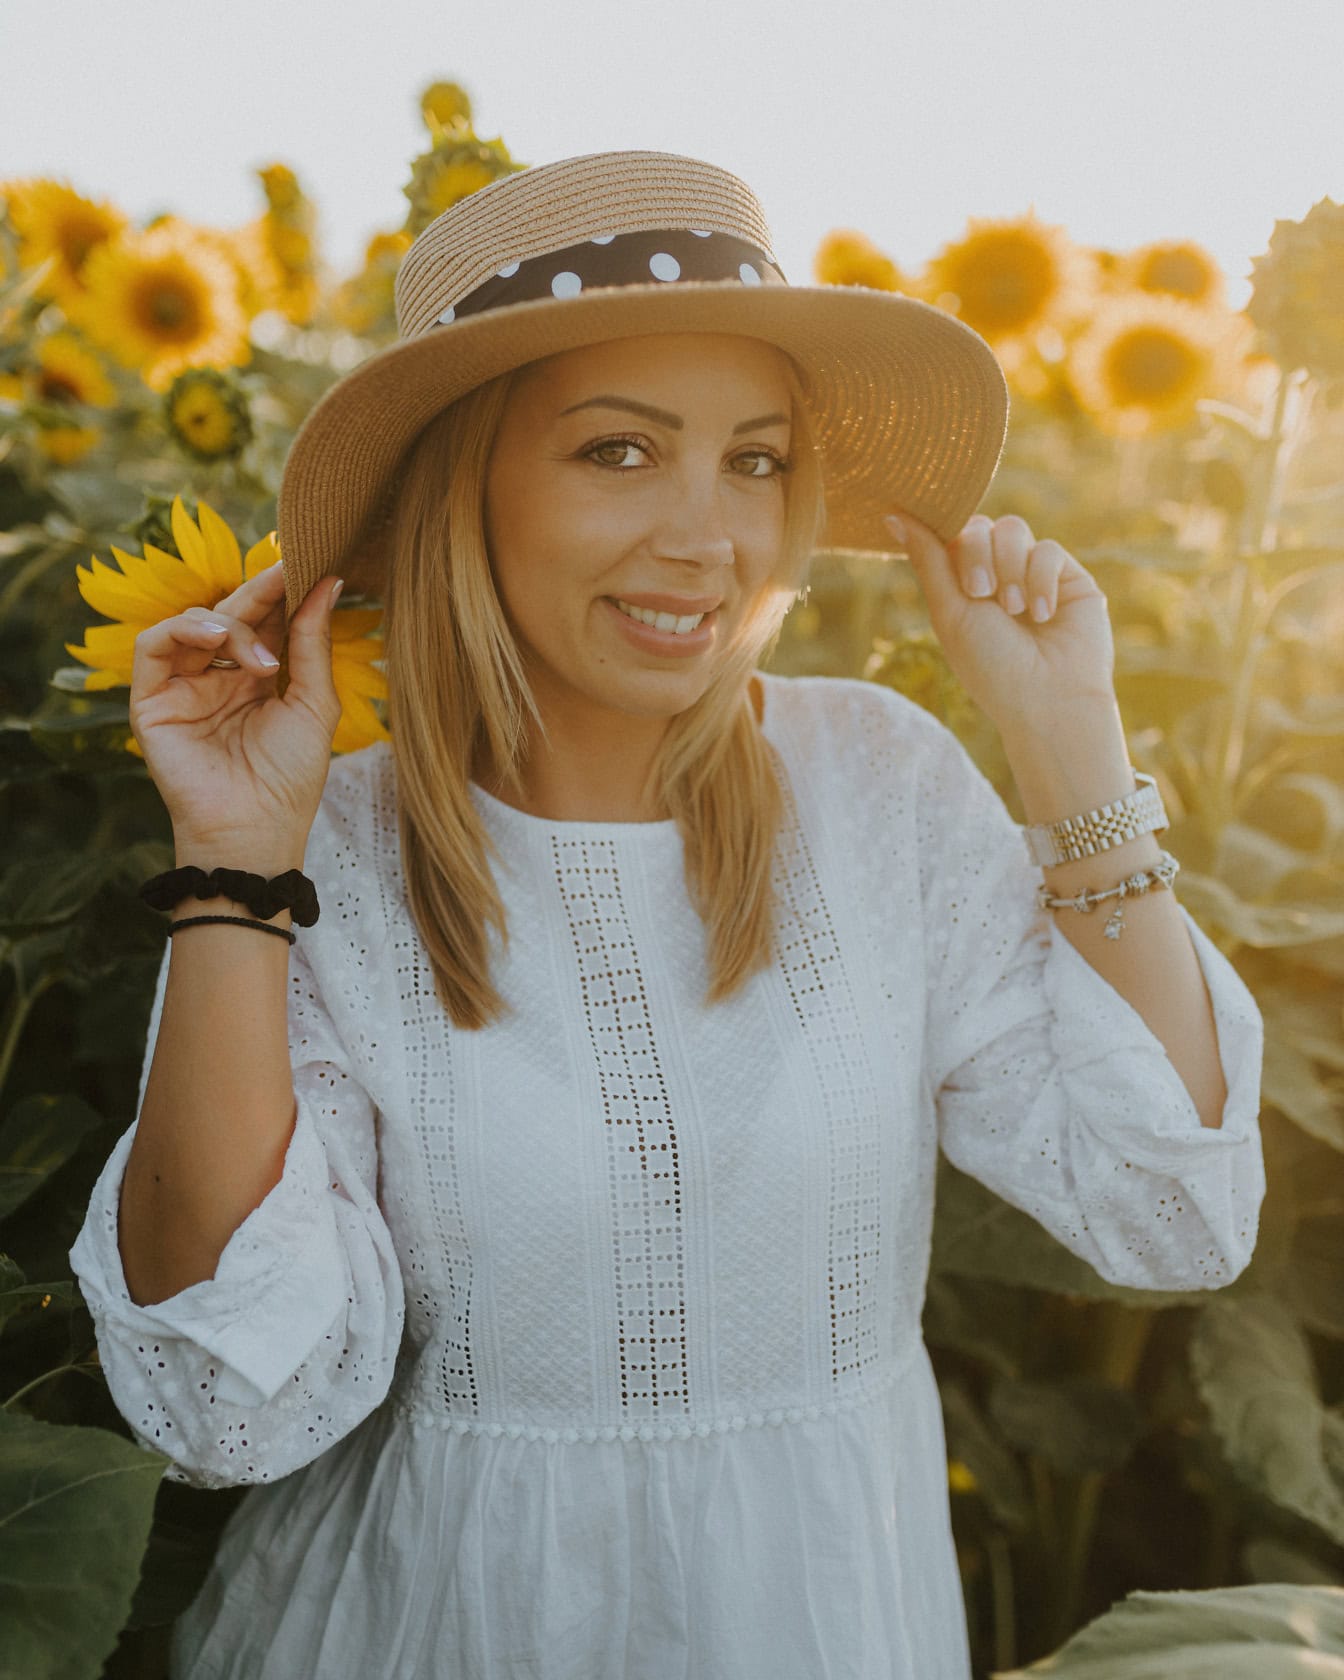 Photographie de portrait professionnel d’une belle femme avec un chapeau de paille dans un champ de tournesols